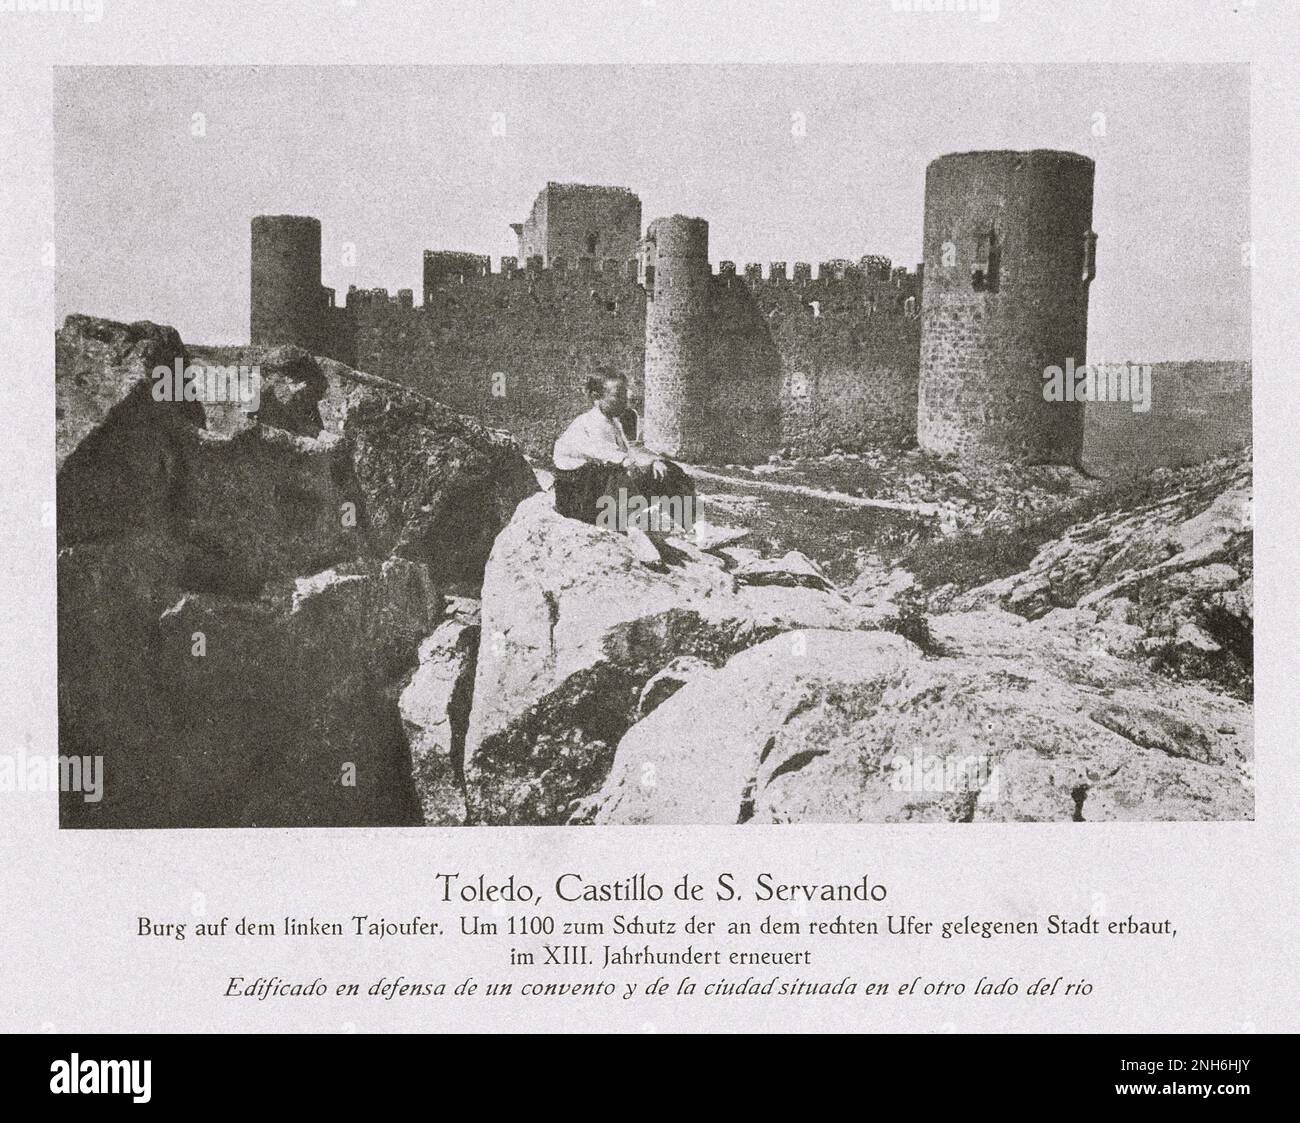 Architektur des alten Spaniens. Oldtimer-Foto von Toledo, Burg von San Servando am linken Ufer des Tejo. Erbaut um 1100, um die Stadt am rechten Ufer zu schützen, renoviert im 13. Jahrhundert Stockfoto